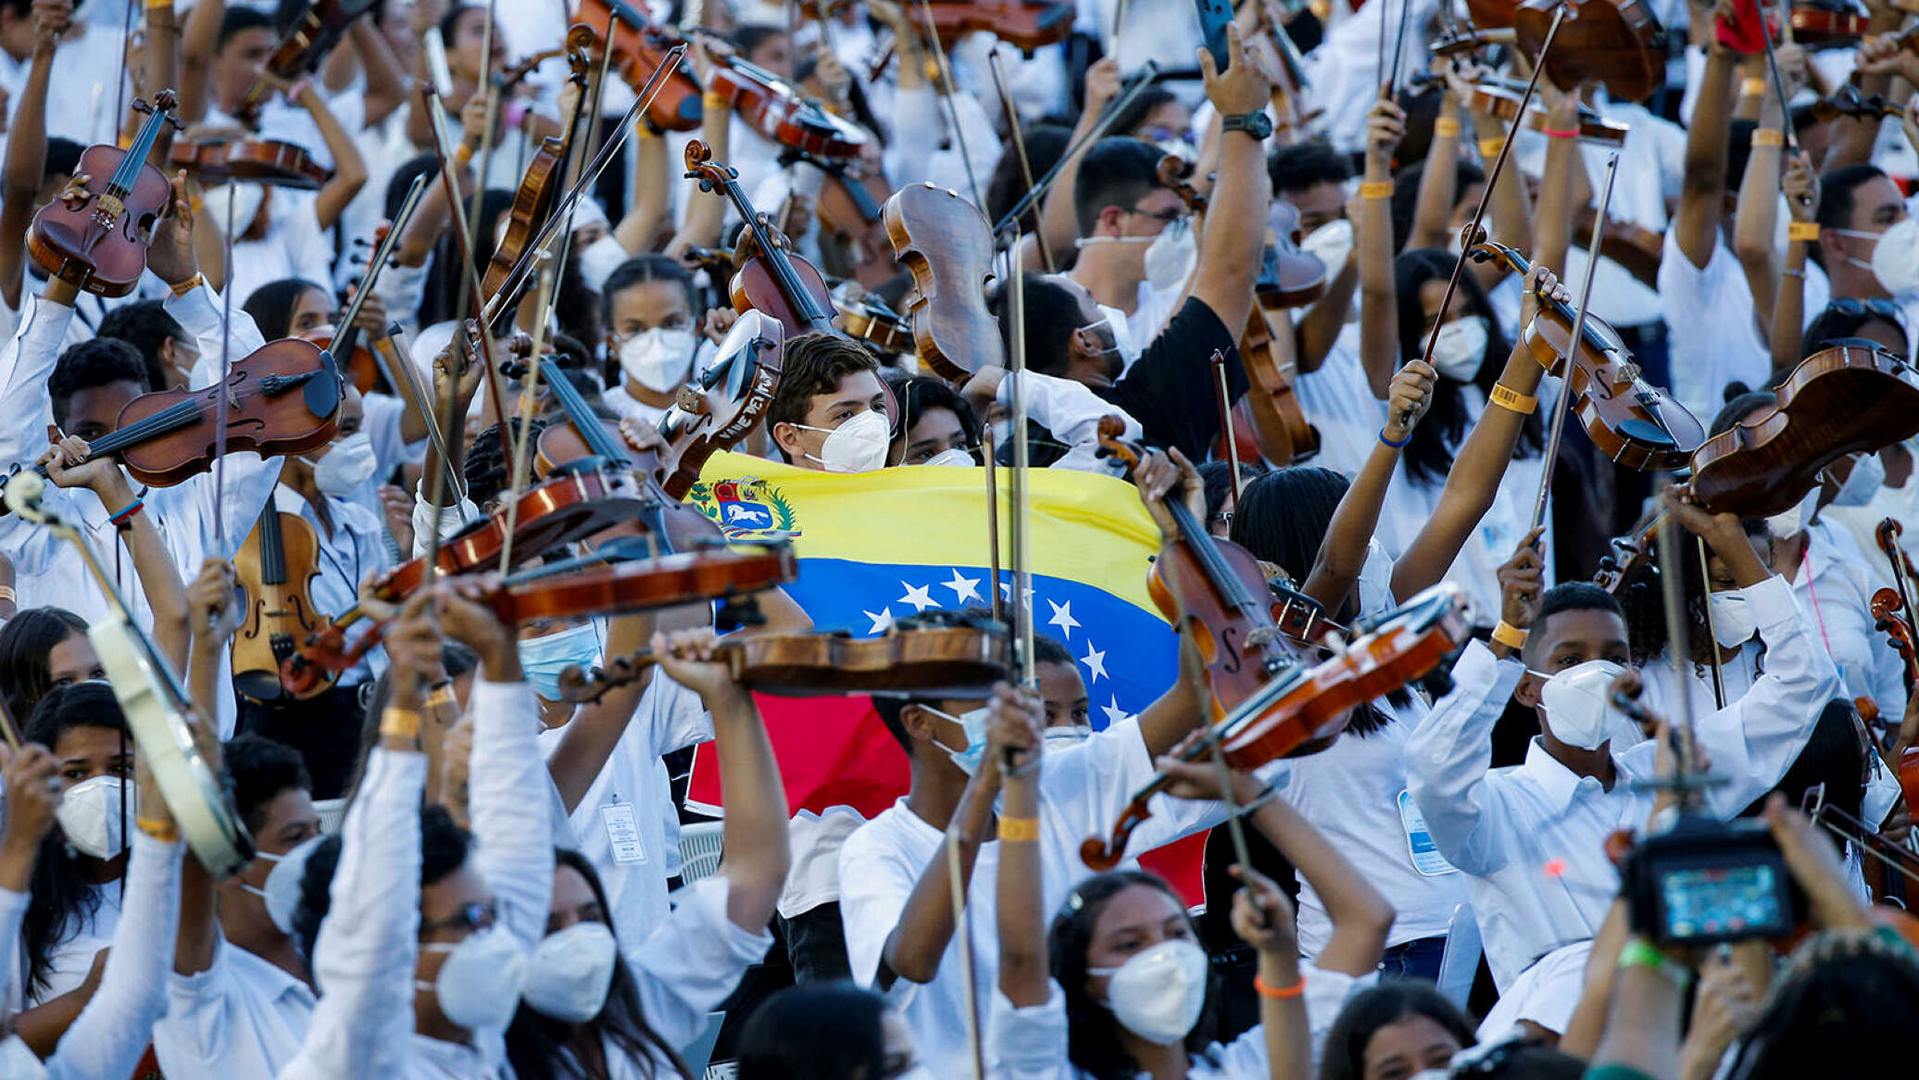 Венесуэльский оркестр El Sistema признали самым большим в мире